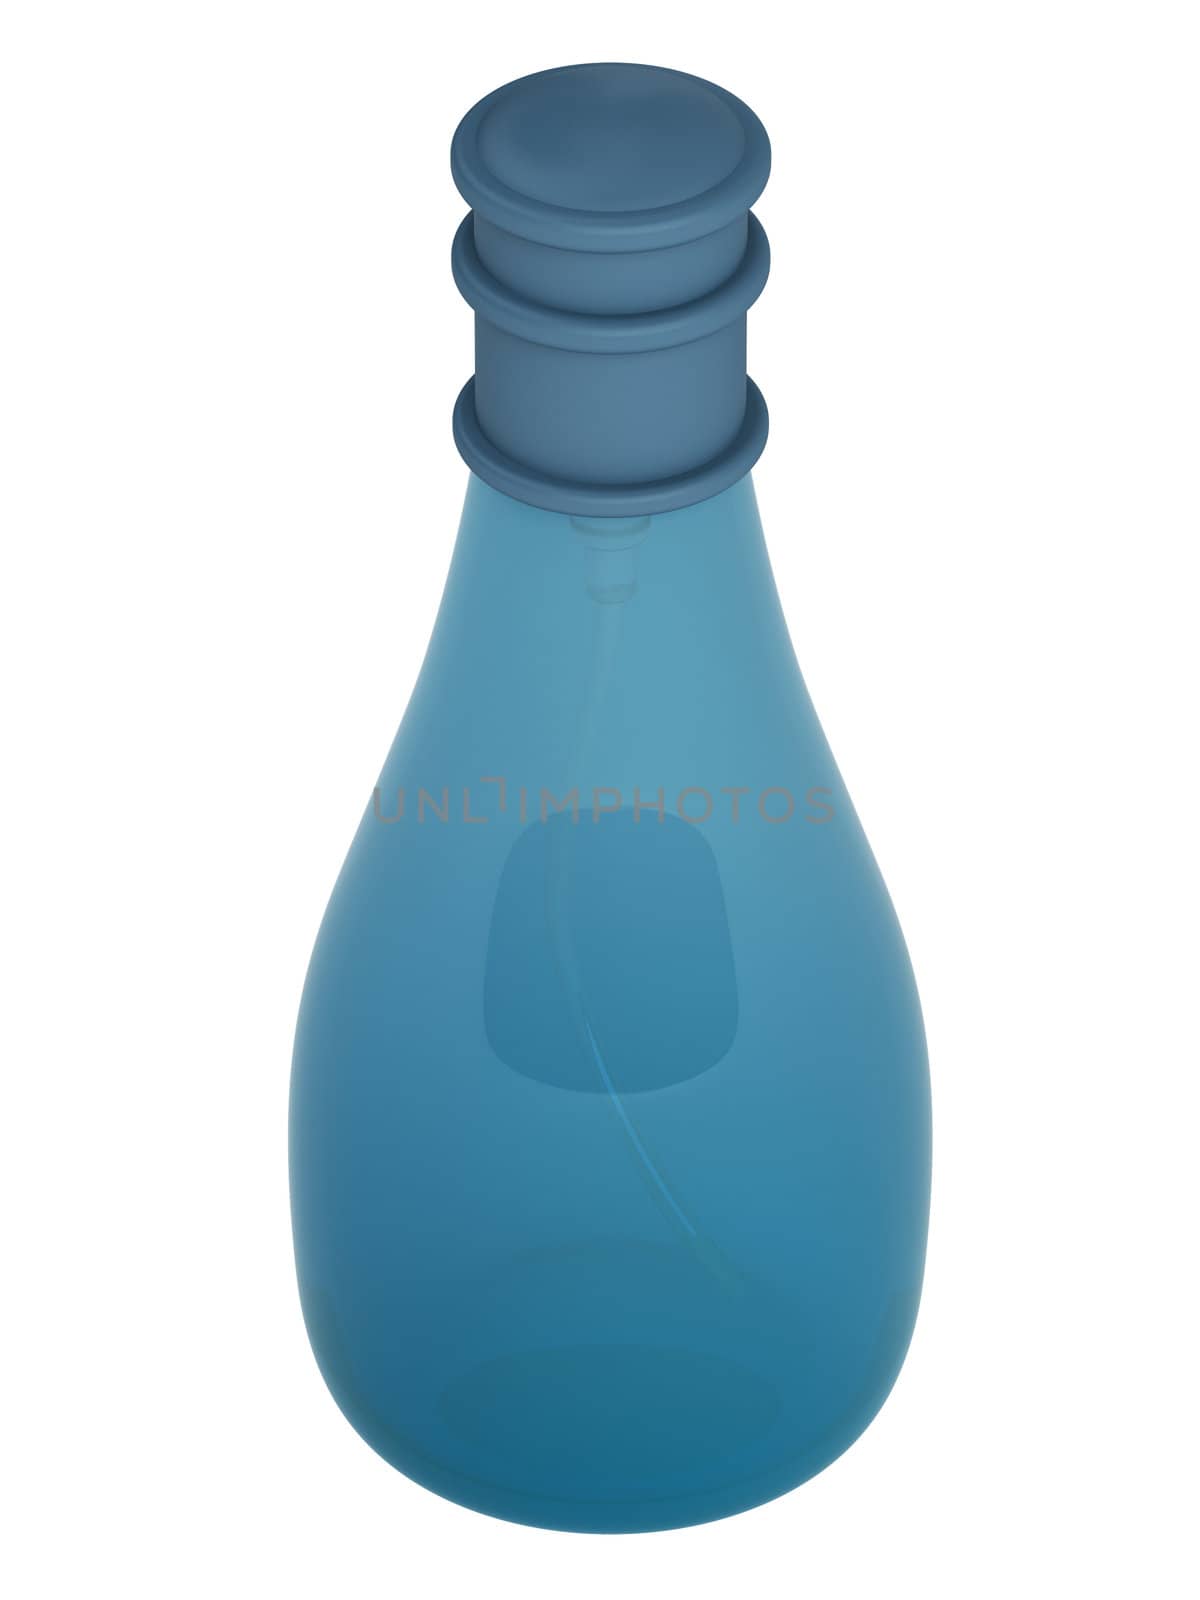 Blue bottle parfume isolated on white background